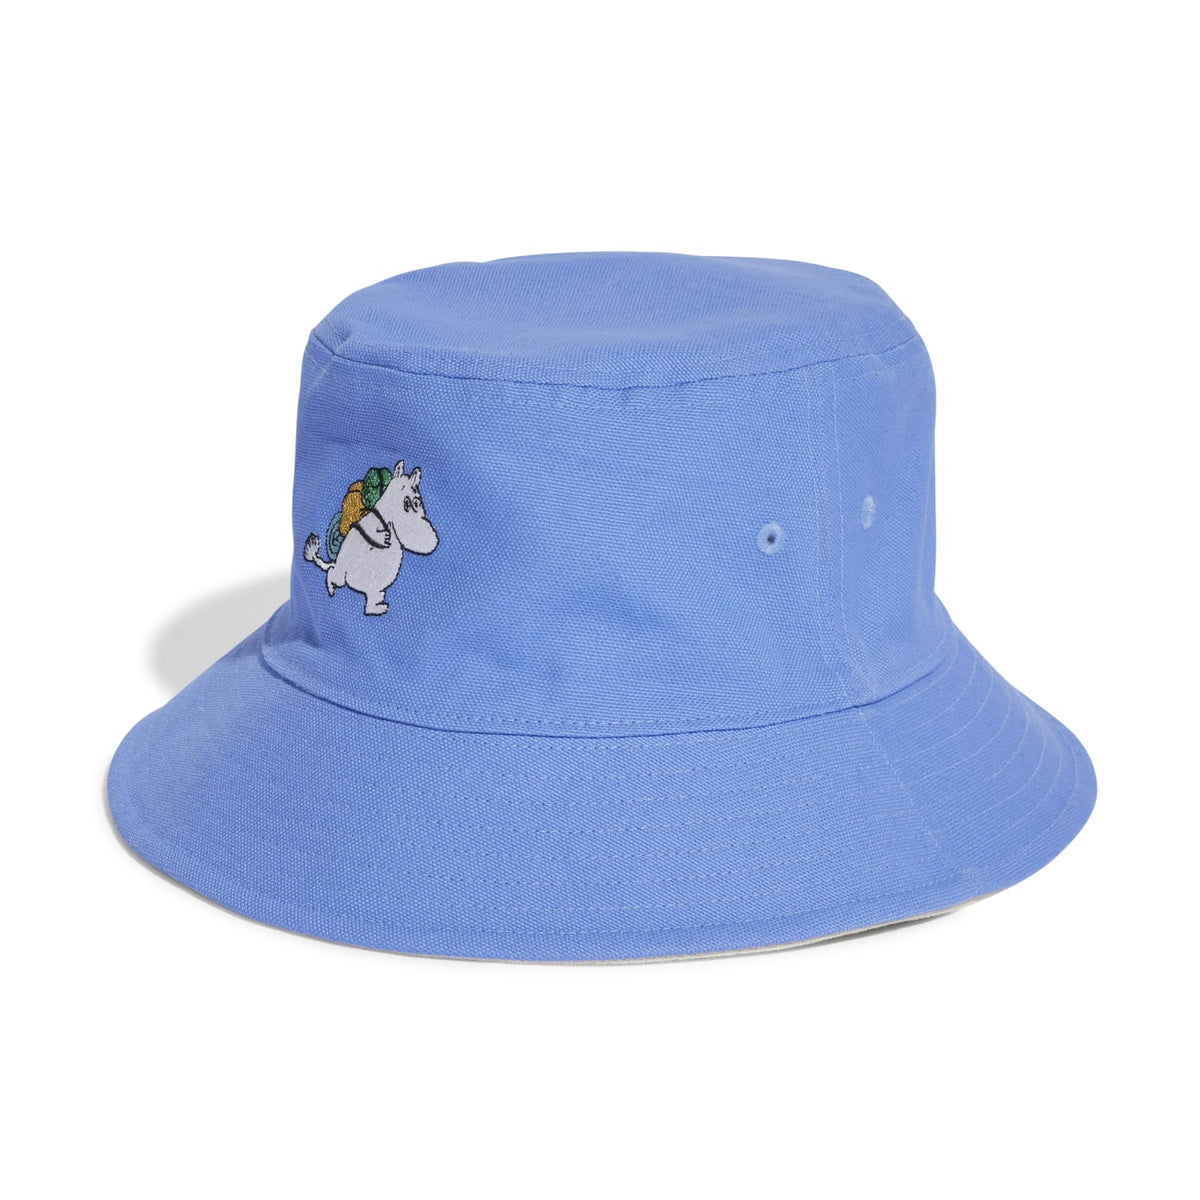 Adidas Bucket Hat x Moomin IC5282 - HEADWEAR - Canada